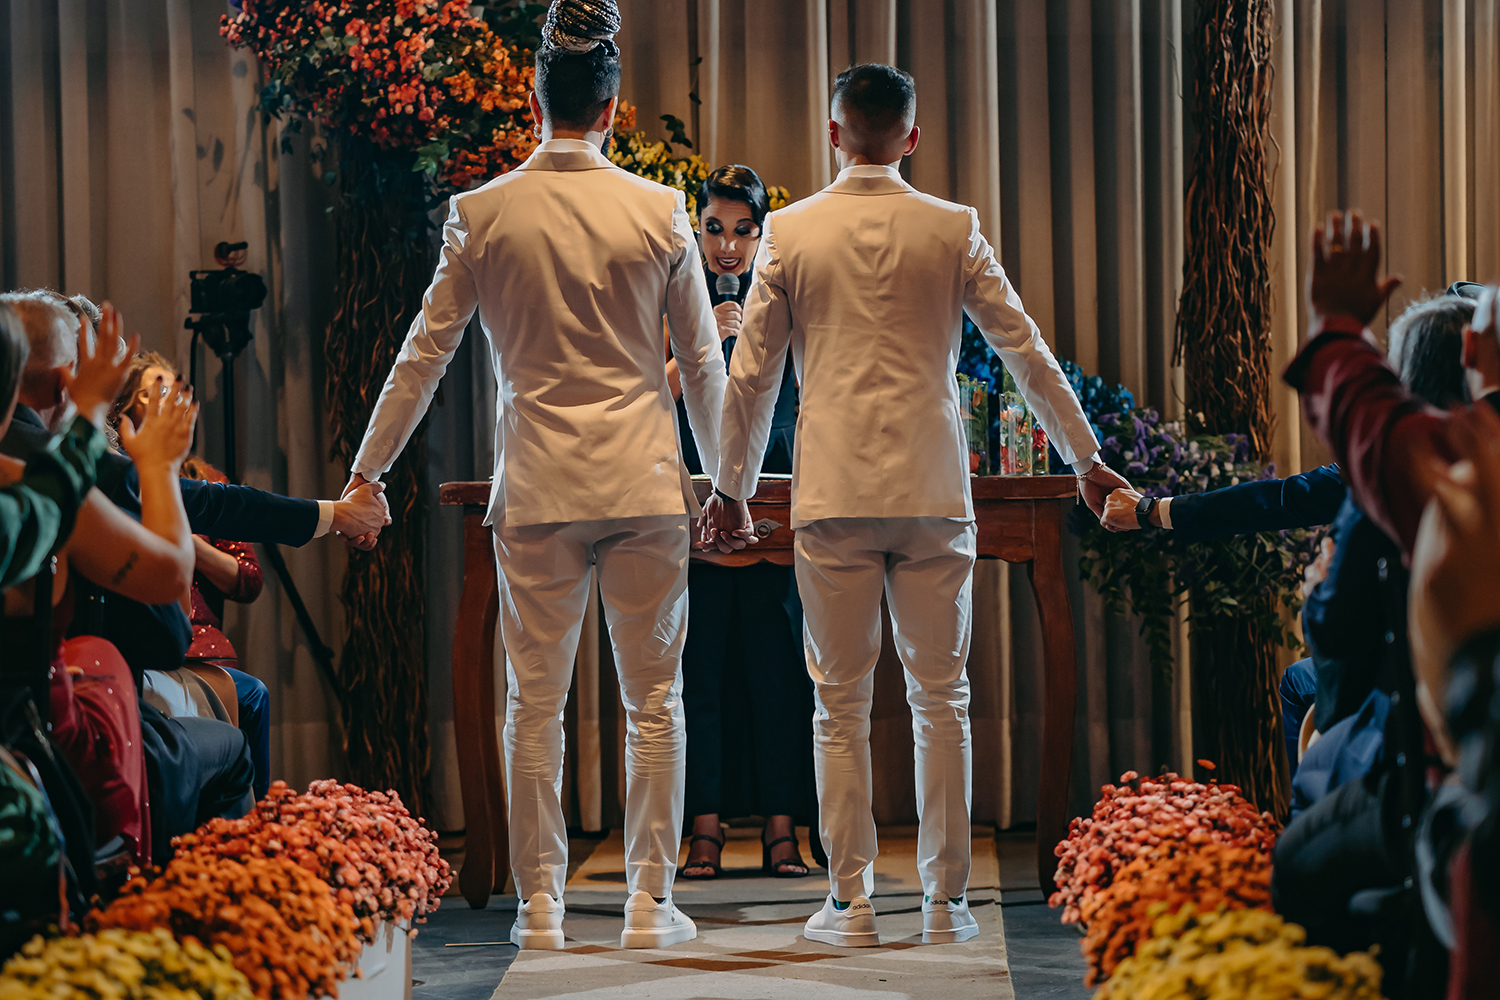 Adriano e Walter | Casamento homoafetivo com as cores do arco-íris